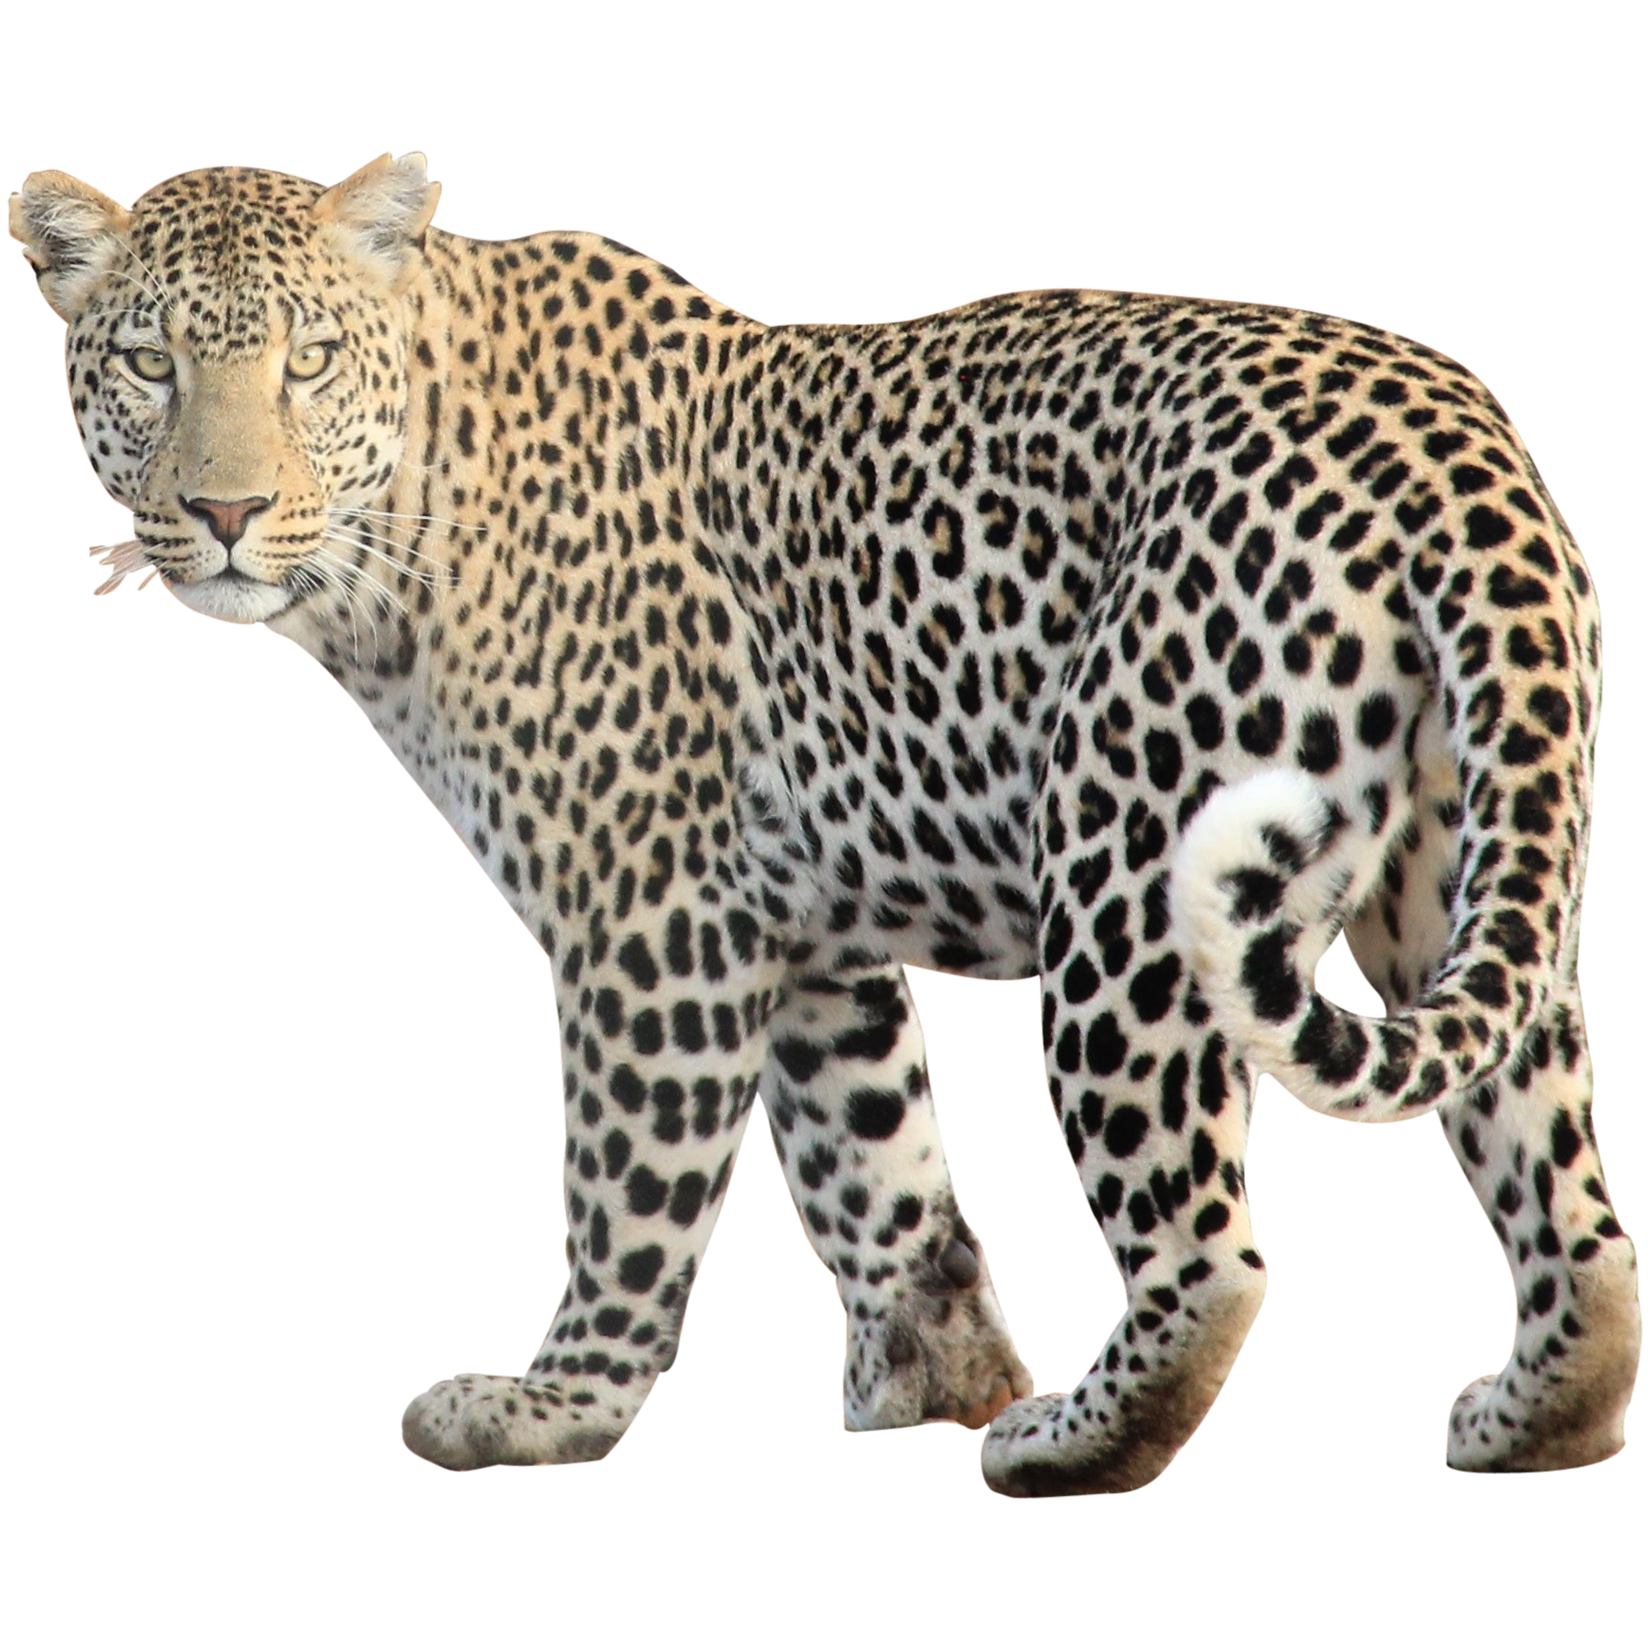 Leopard icons | Noun Project